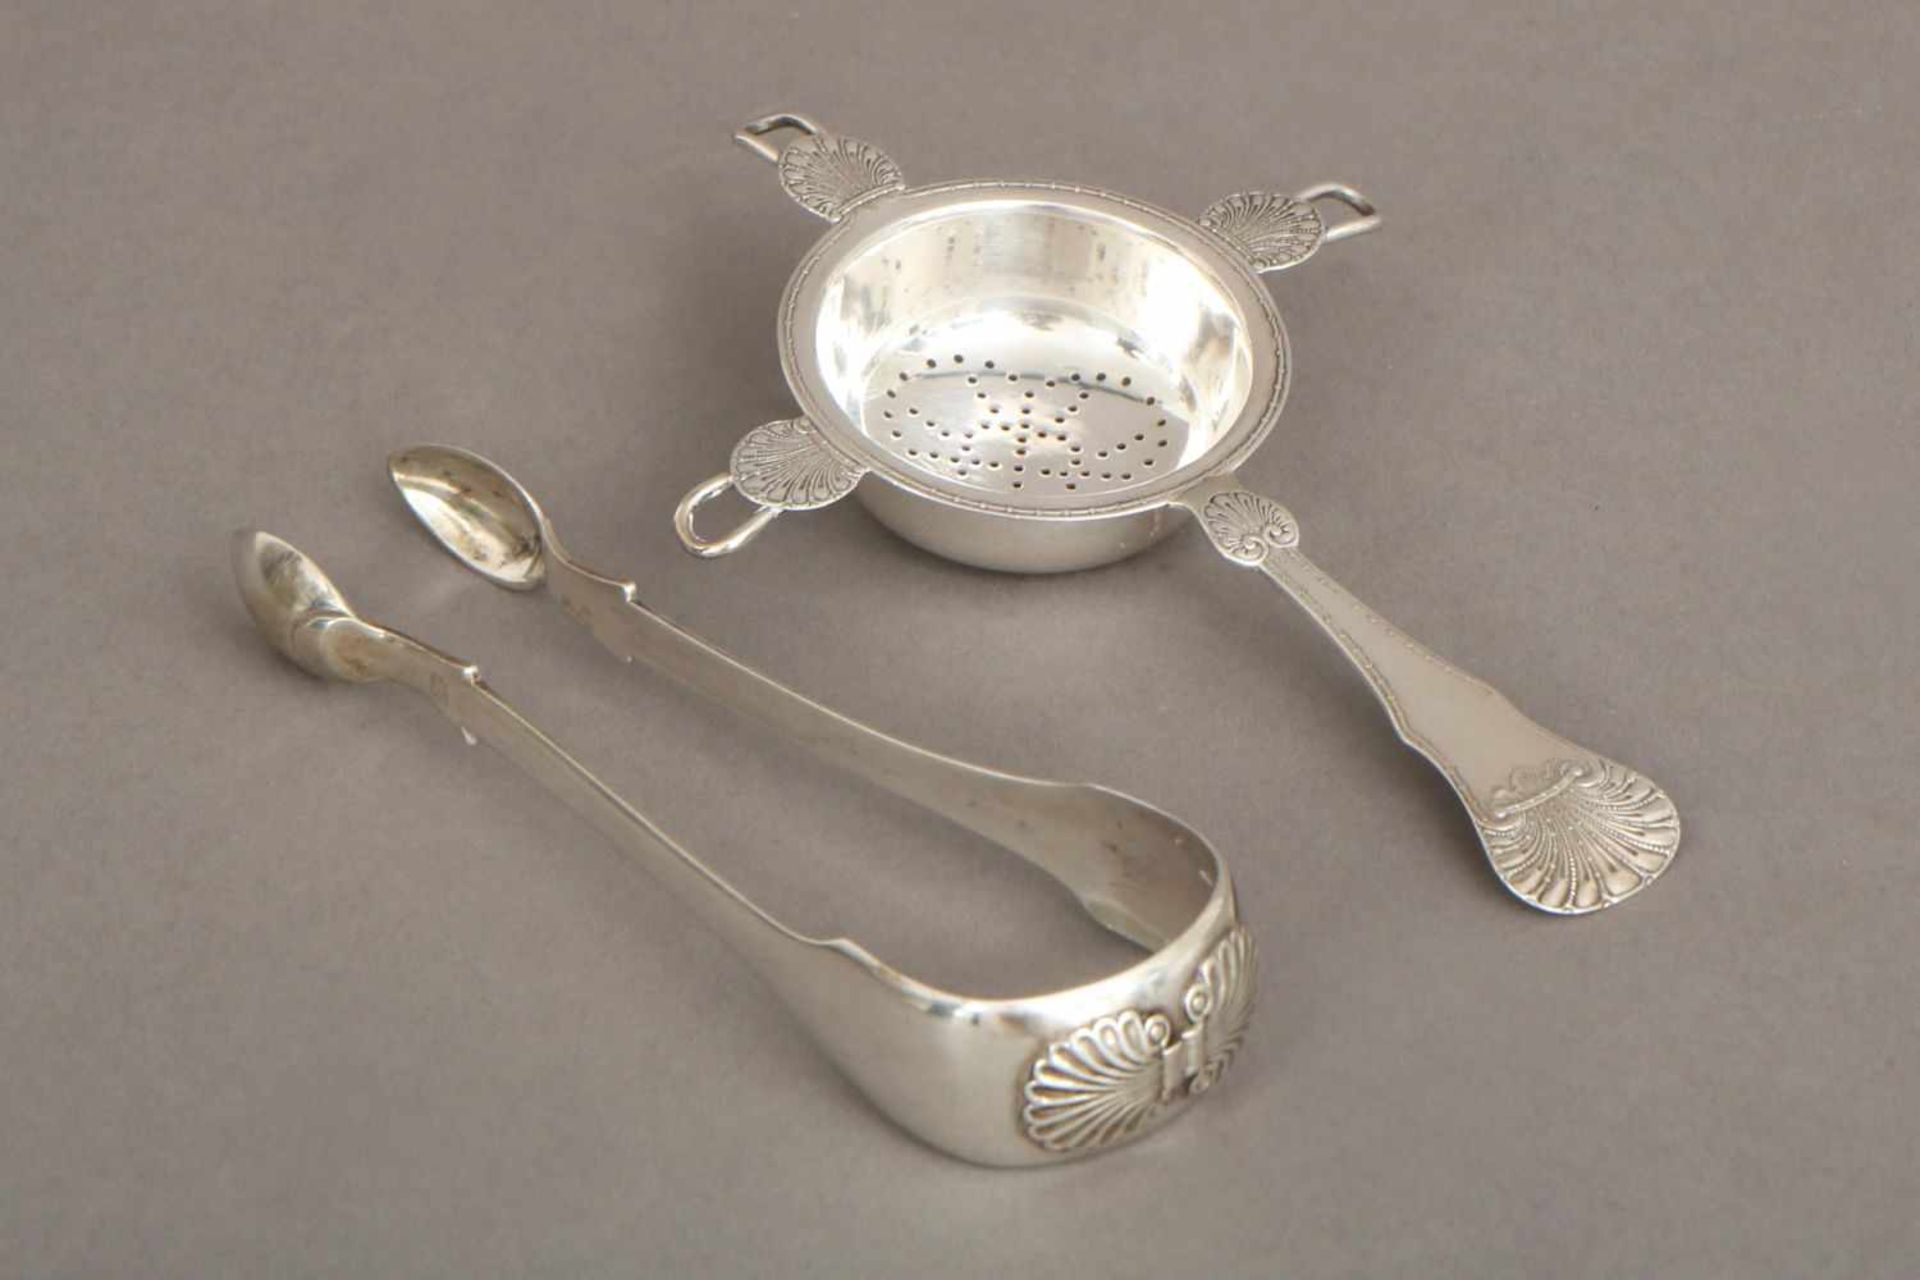 2 Teile ¨Empire¨ Tafelsilber1 Zuckerzange (Hamburger Silber, frühes 19. Jahrhundert) und 1 - Bild 3 aus 3